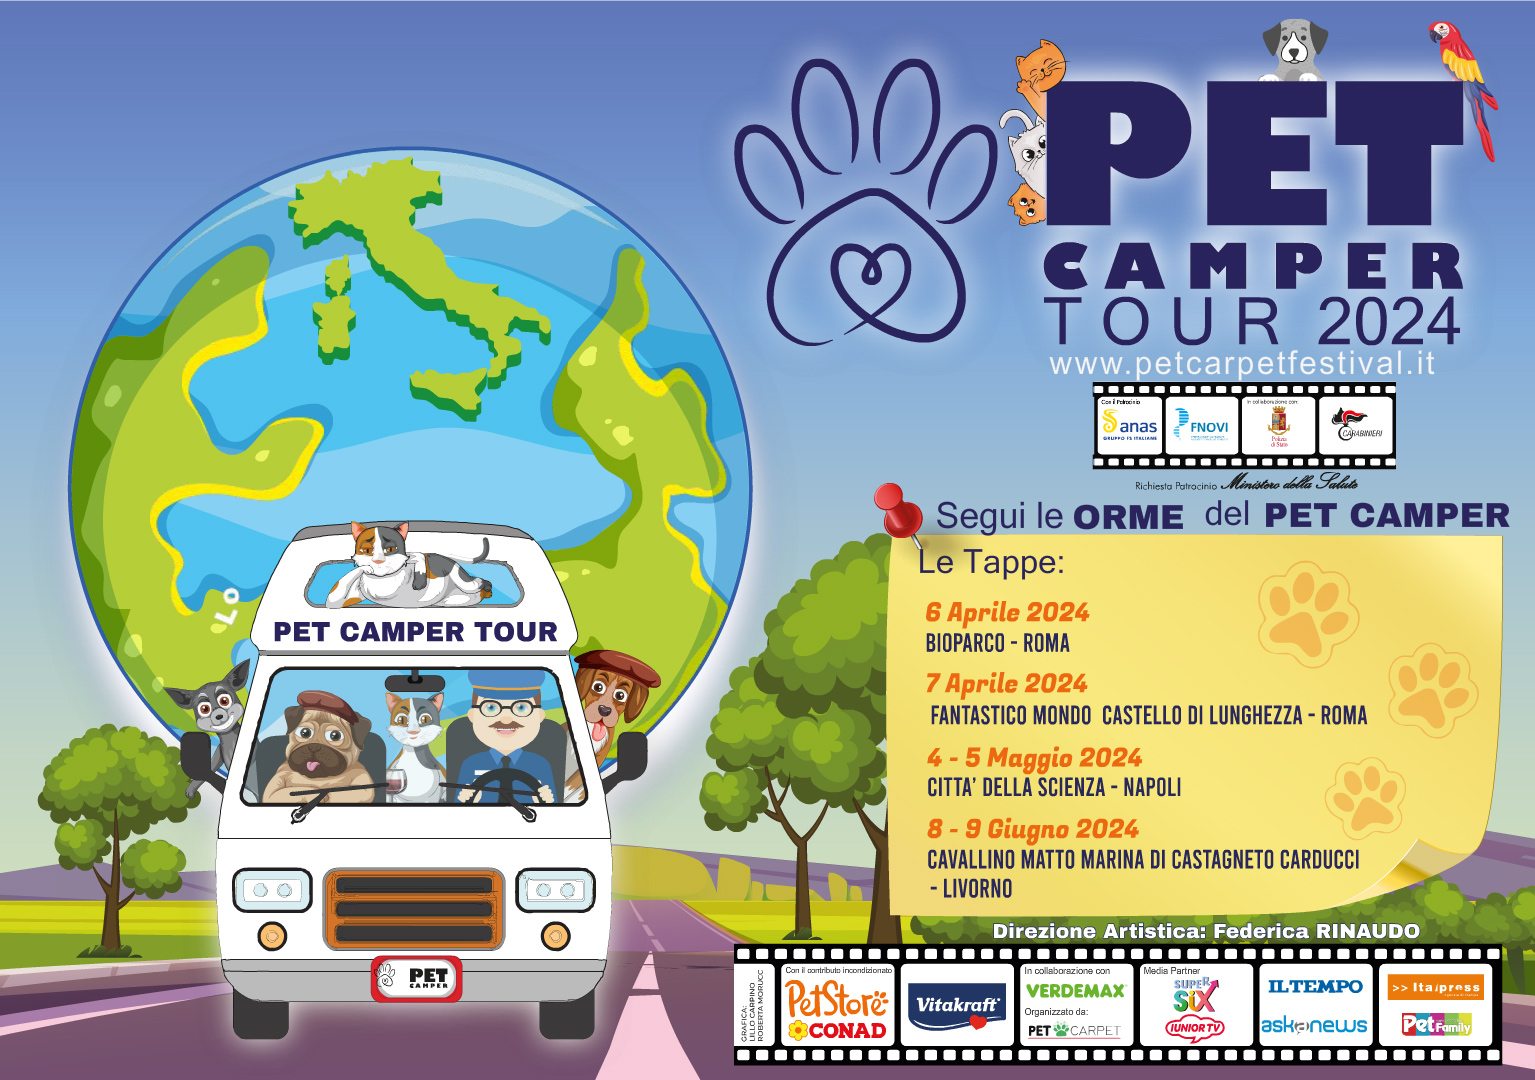 A Napoli il Pet Camper Tour, in collaborazione con Polizia, Carabinieri, Anas, contro l'abbandono, in difesa dell'ambiente e per la sicurezza stradale.
